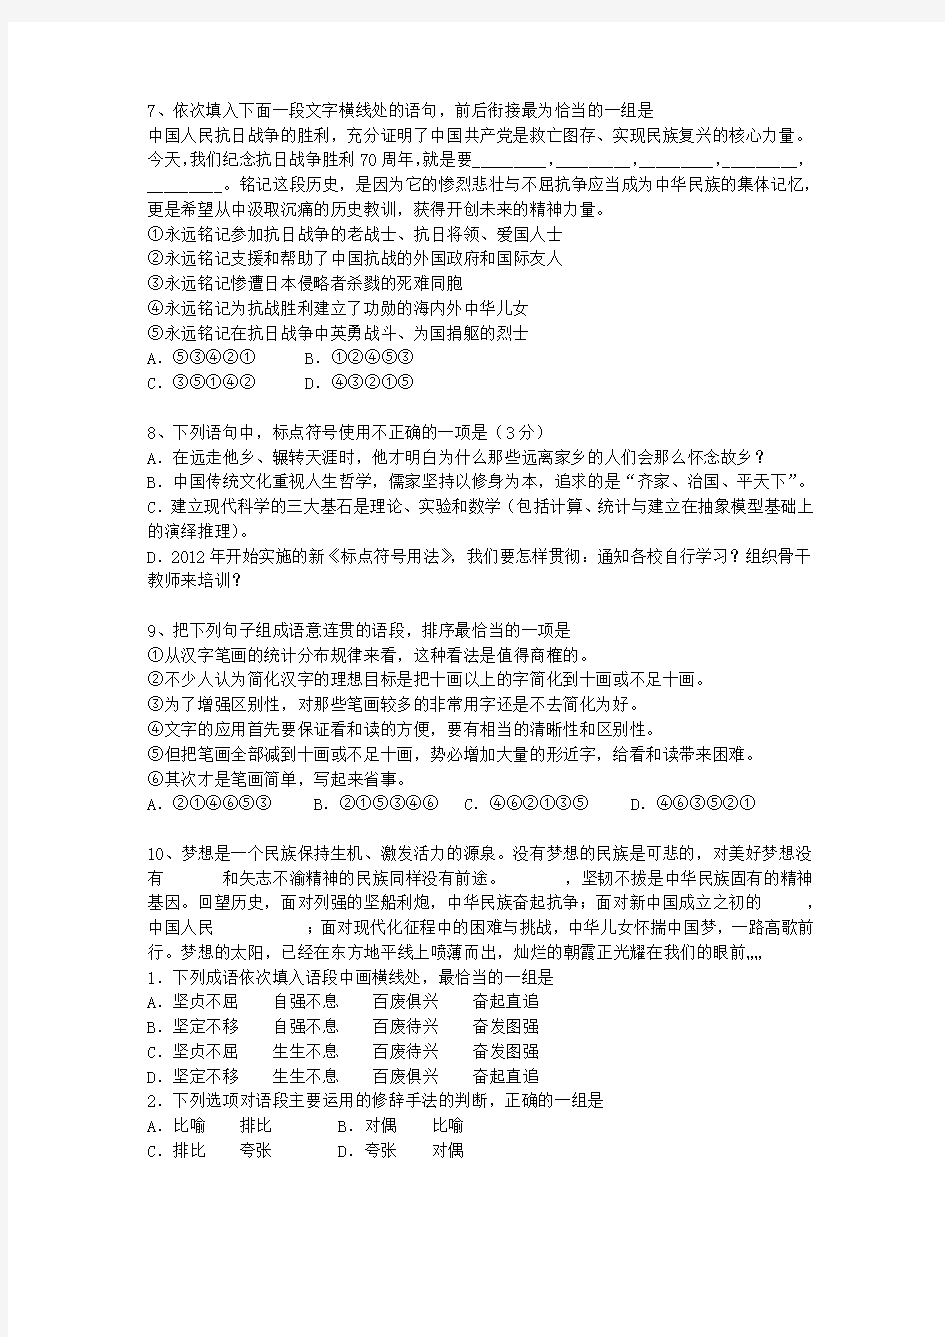 2012湖南省高考语文试题及详细答案考试重点和考试技巧